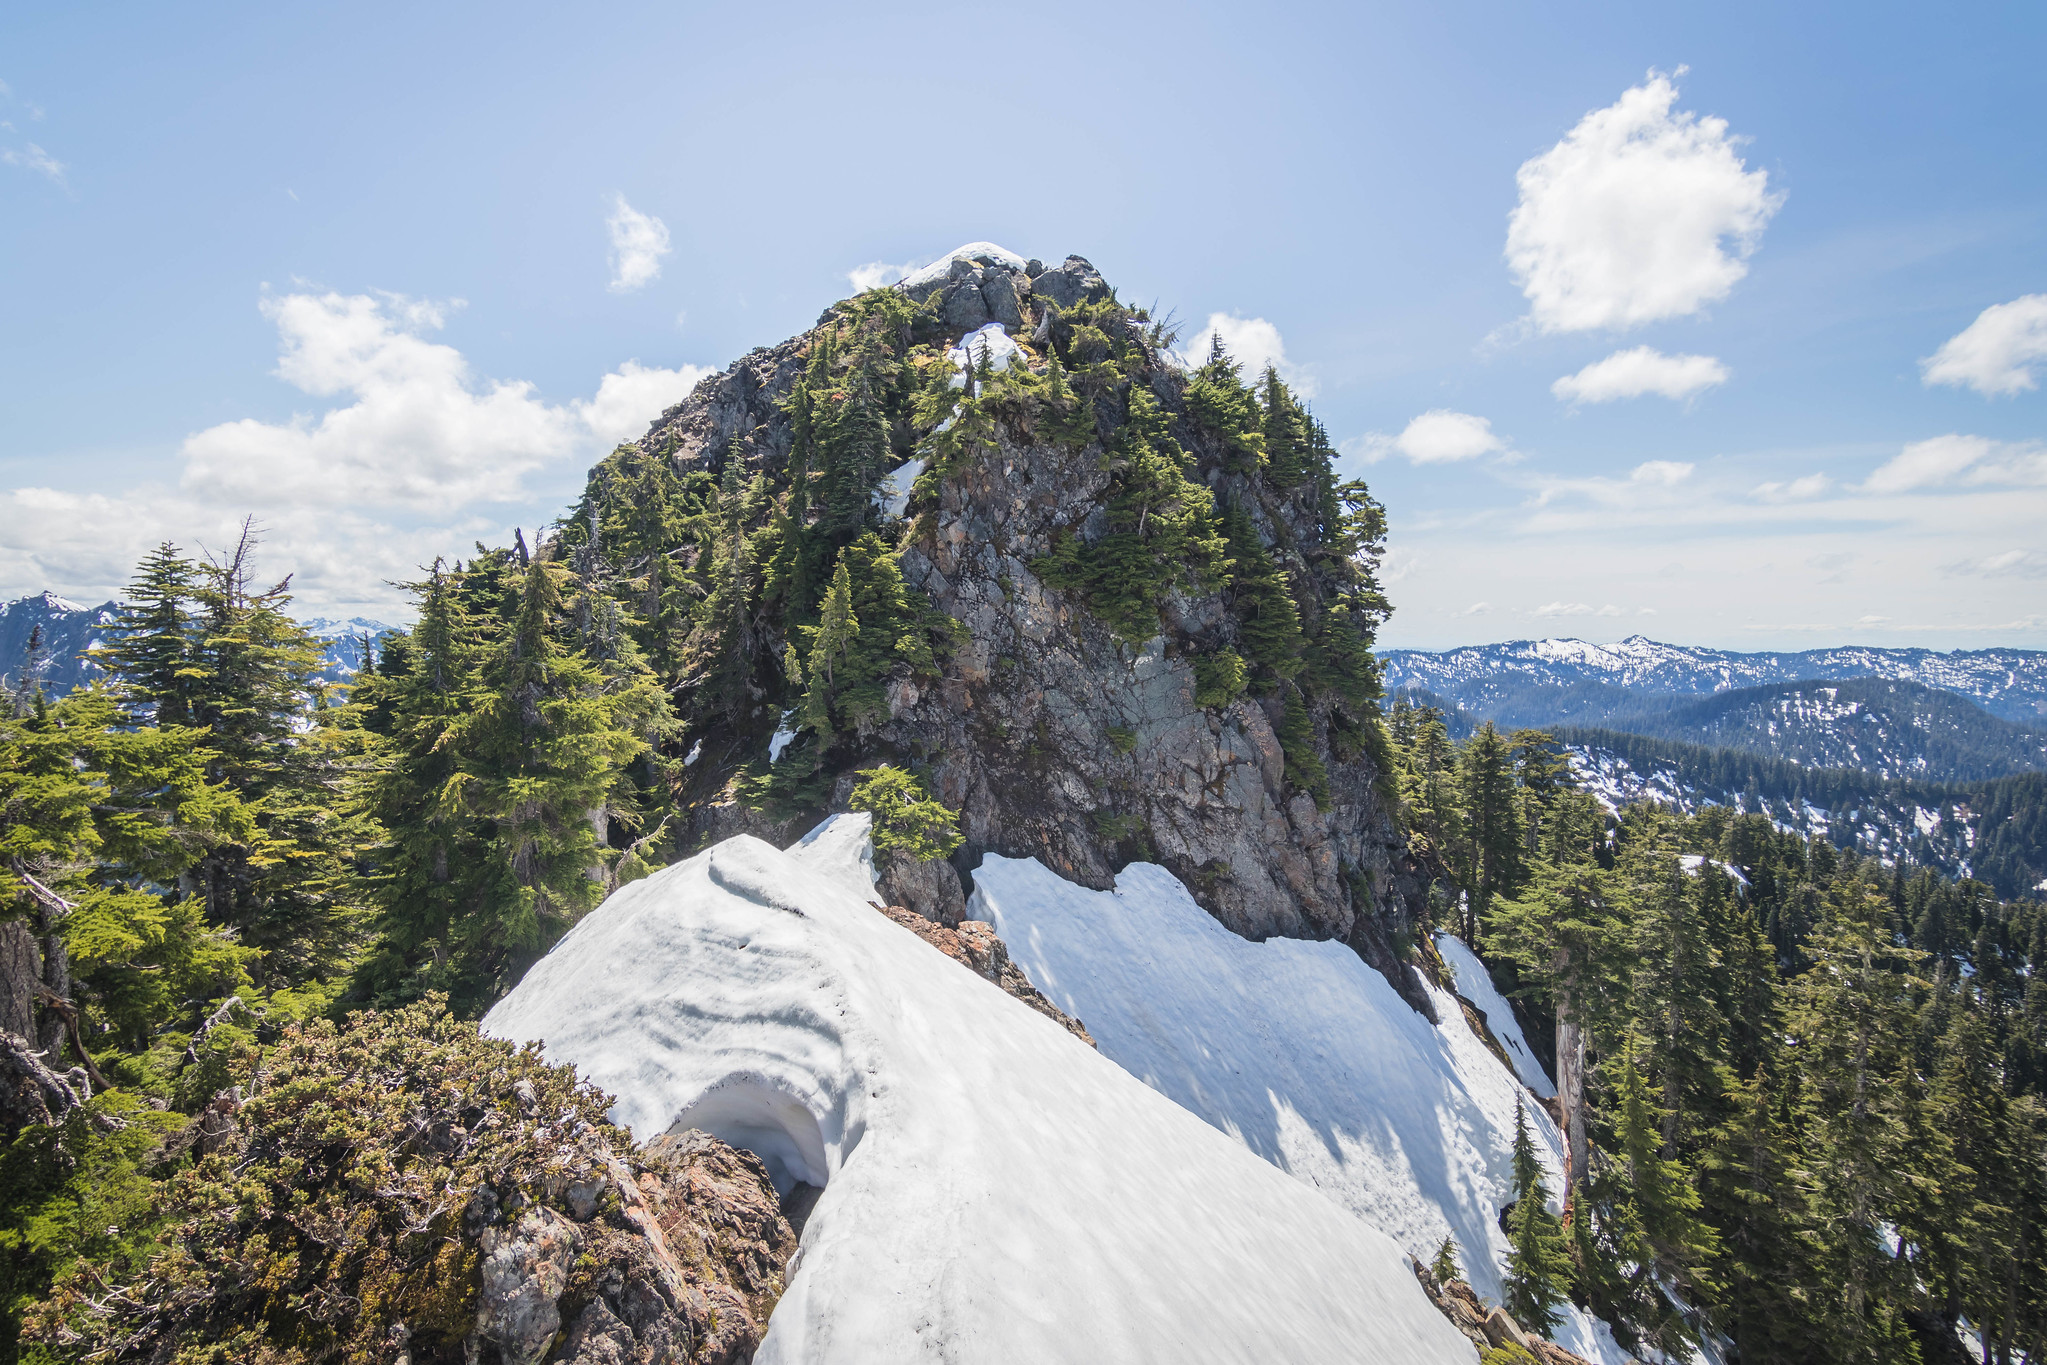 Marble Peak summit up ahead